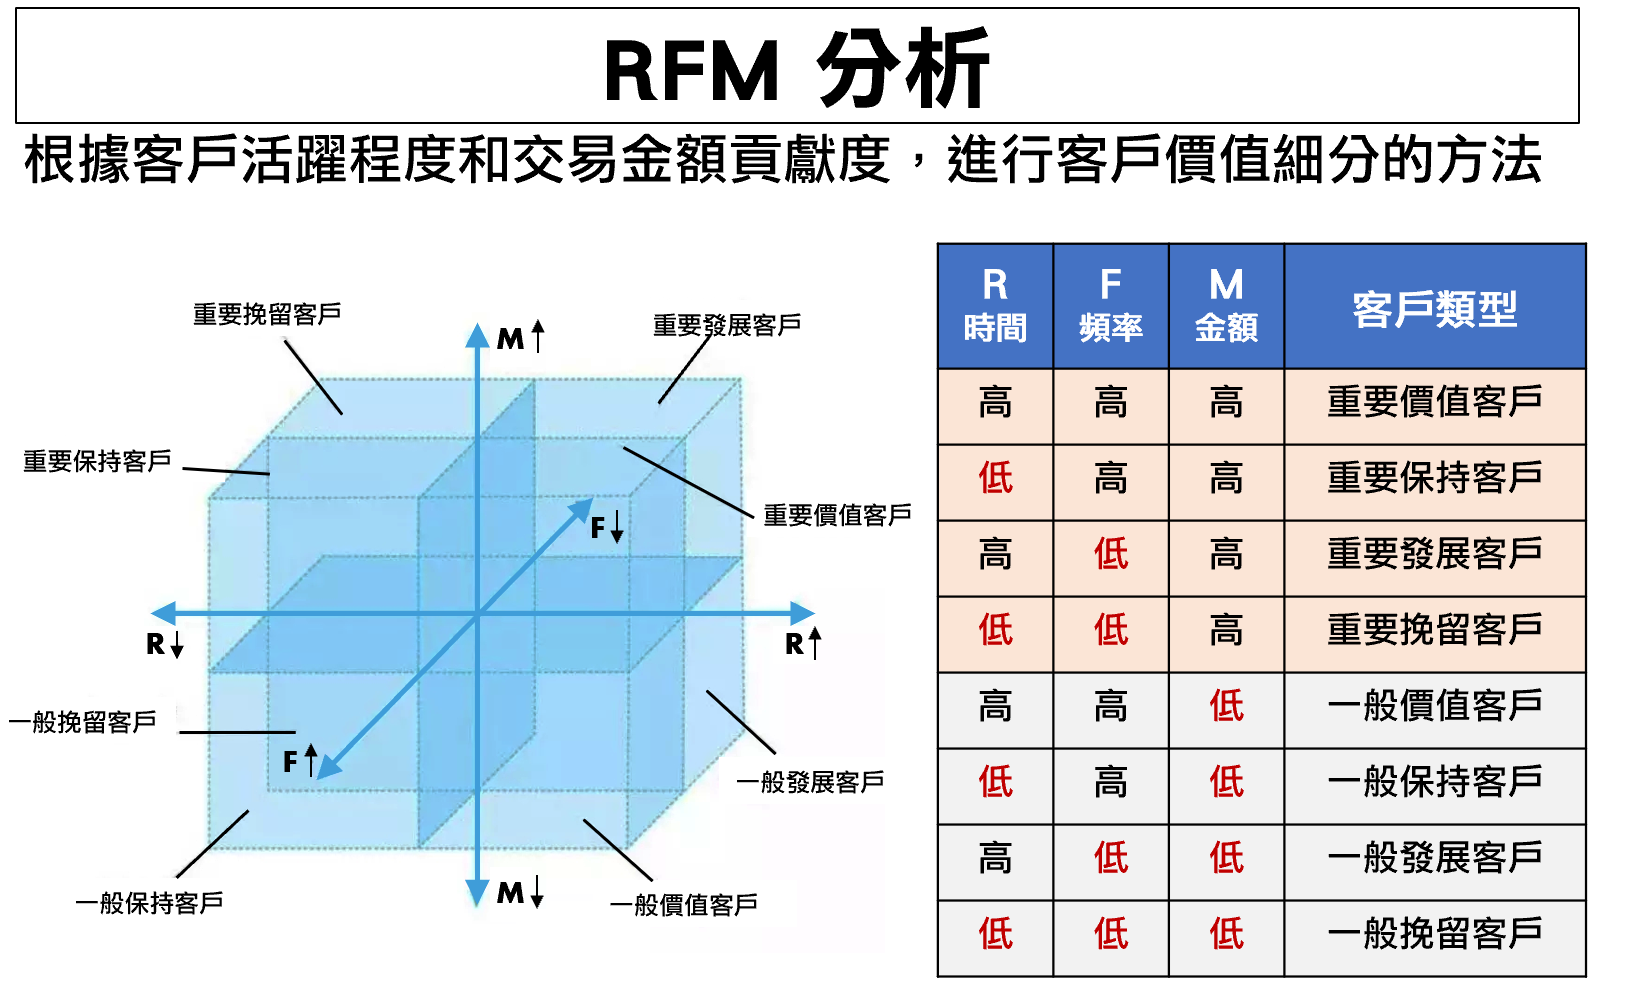 RFM 5